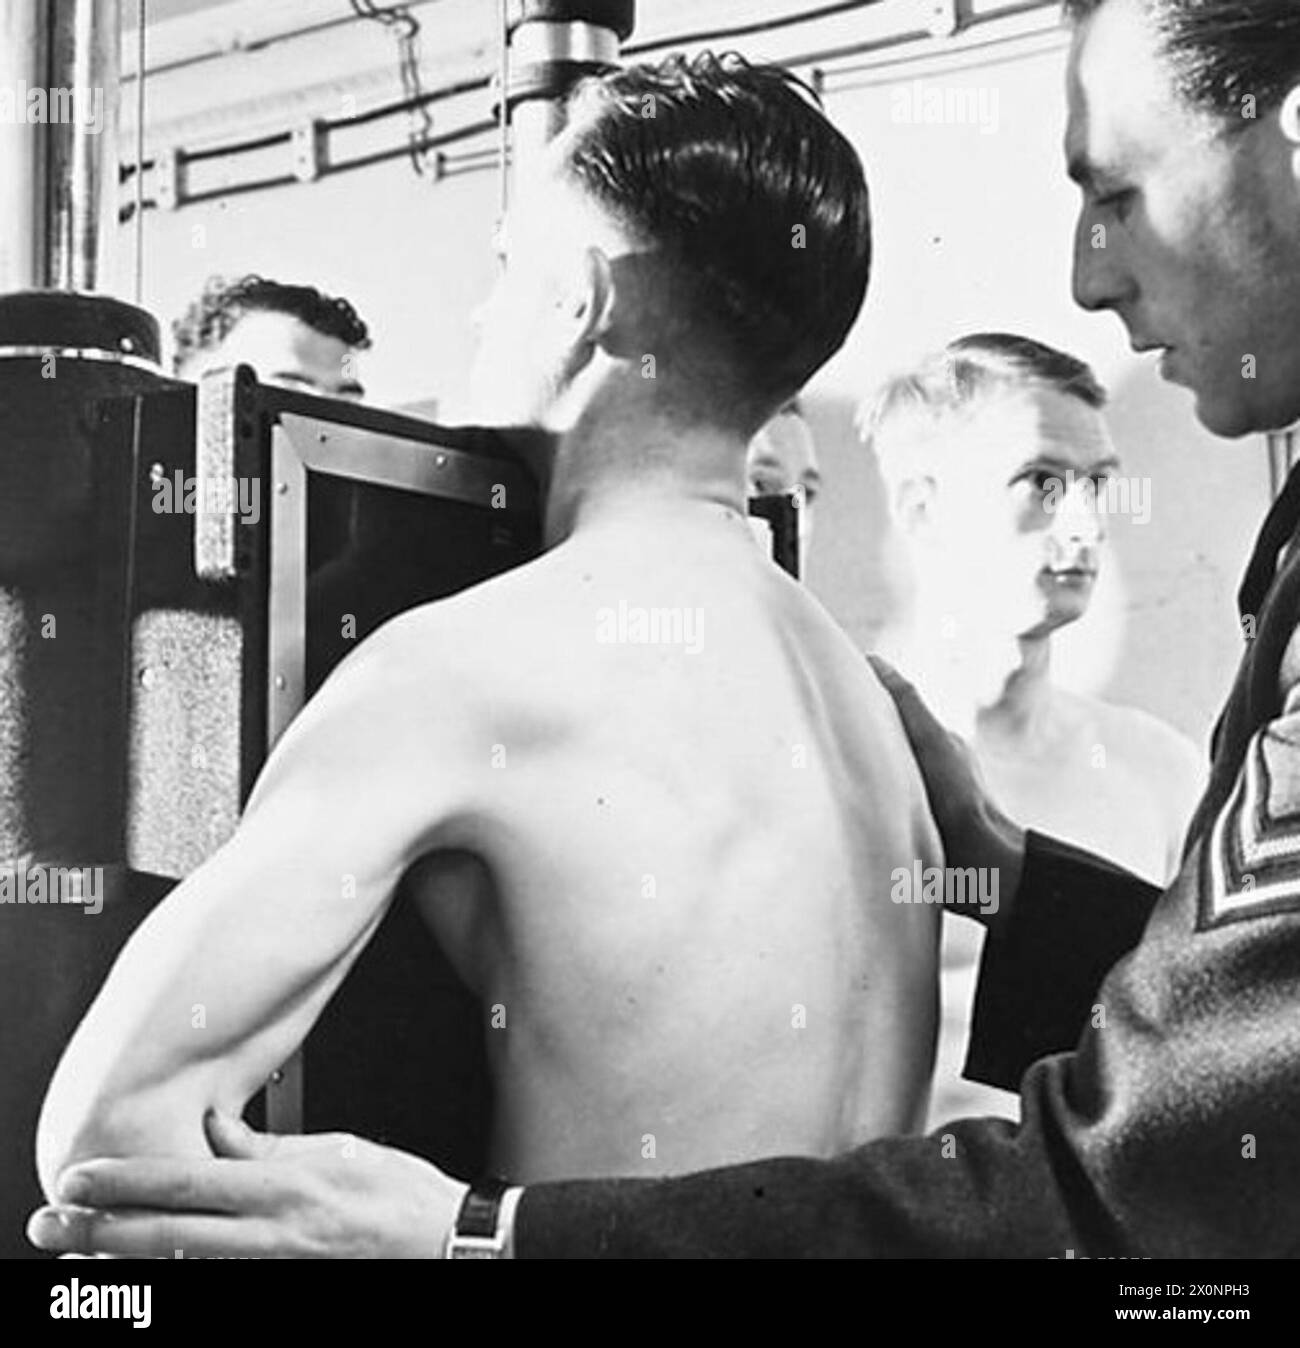 MASSENRADIOGRAPHIE EINER FLUGBESATZUNG - für die Geschichte siehe CH.9938 Bild (ausgestellt 1943) zeigt - Mitglieder einer Flugbesatzung werden geröntgt. Fotografisches negativ, Royal Air Force Stockfoto